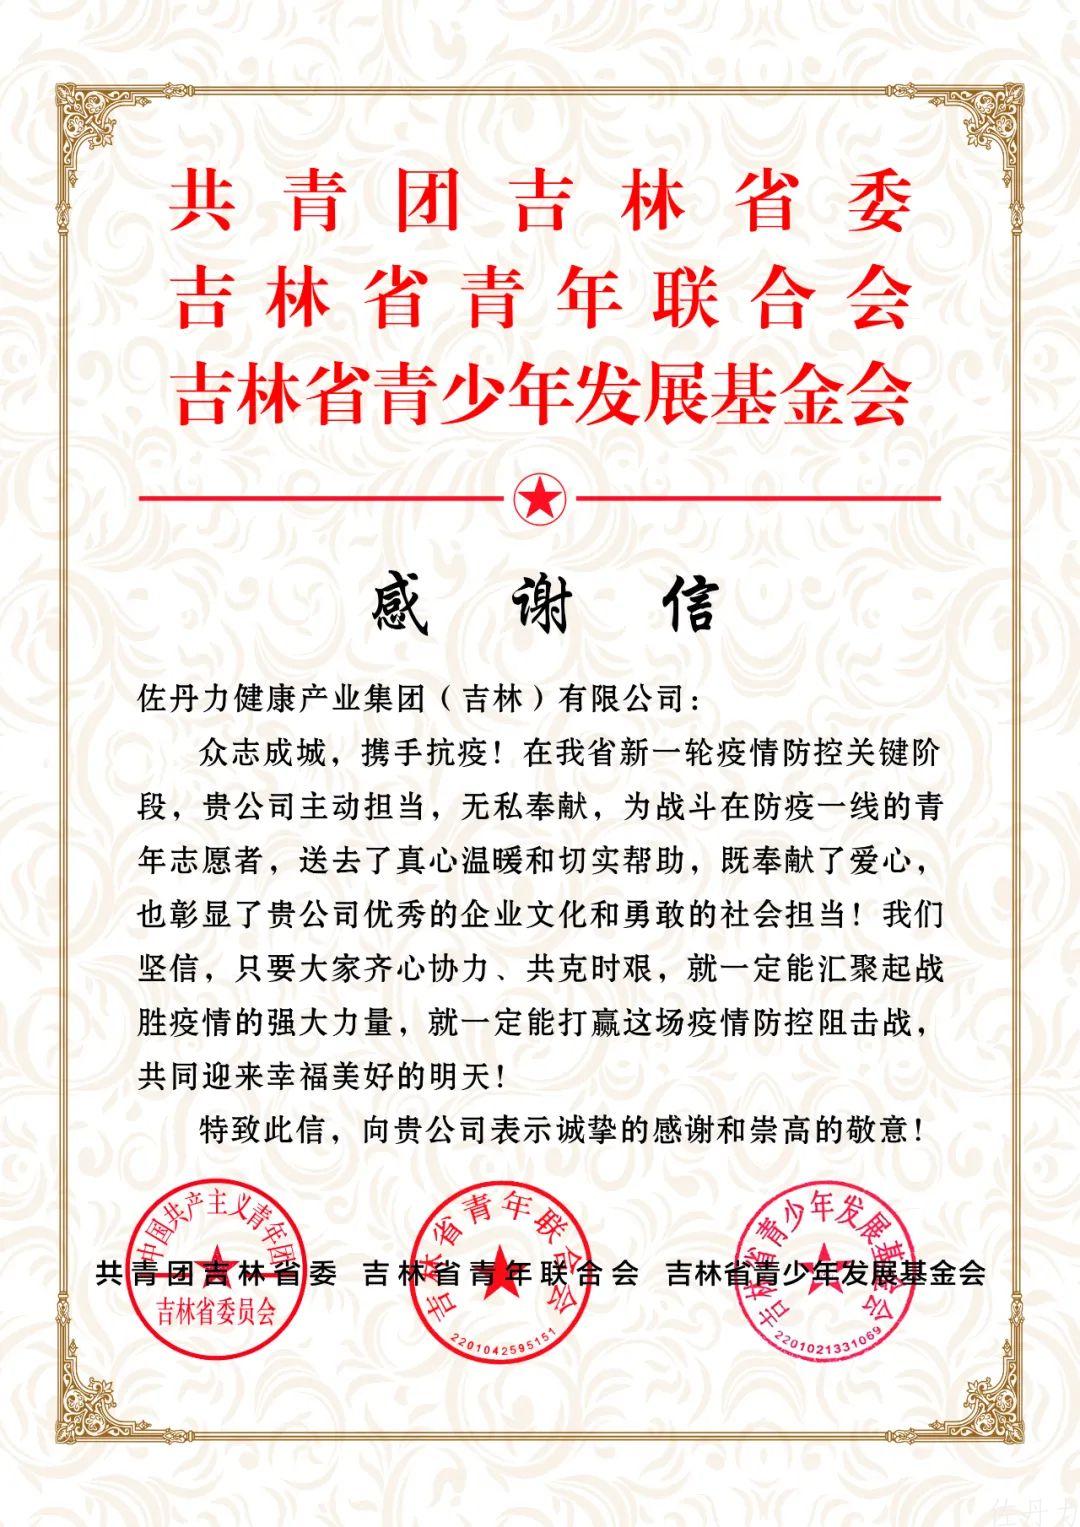 共青团吉林省委、省青联、省青基会向佐丹力集团发来感谢信